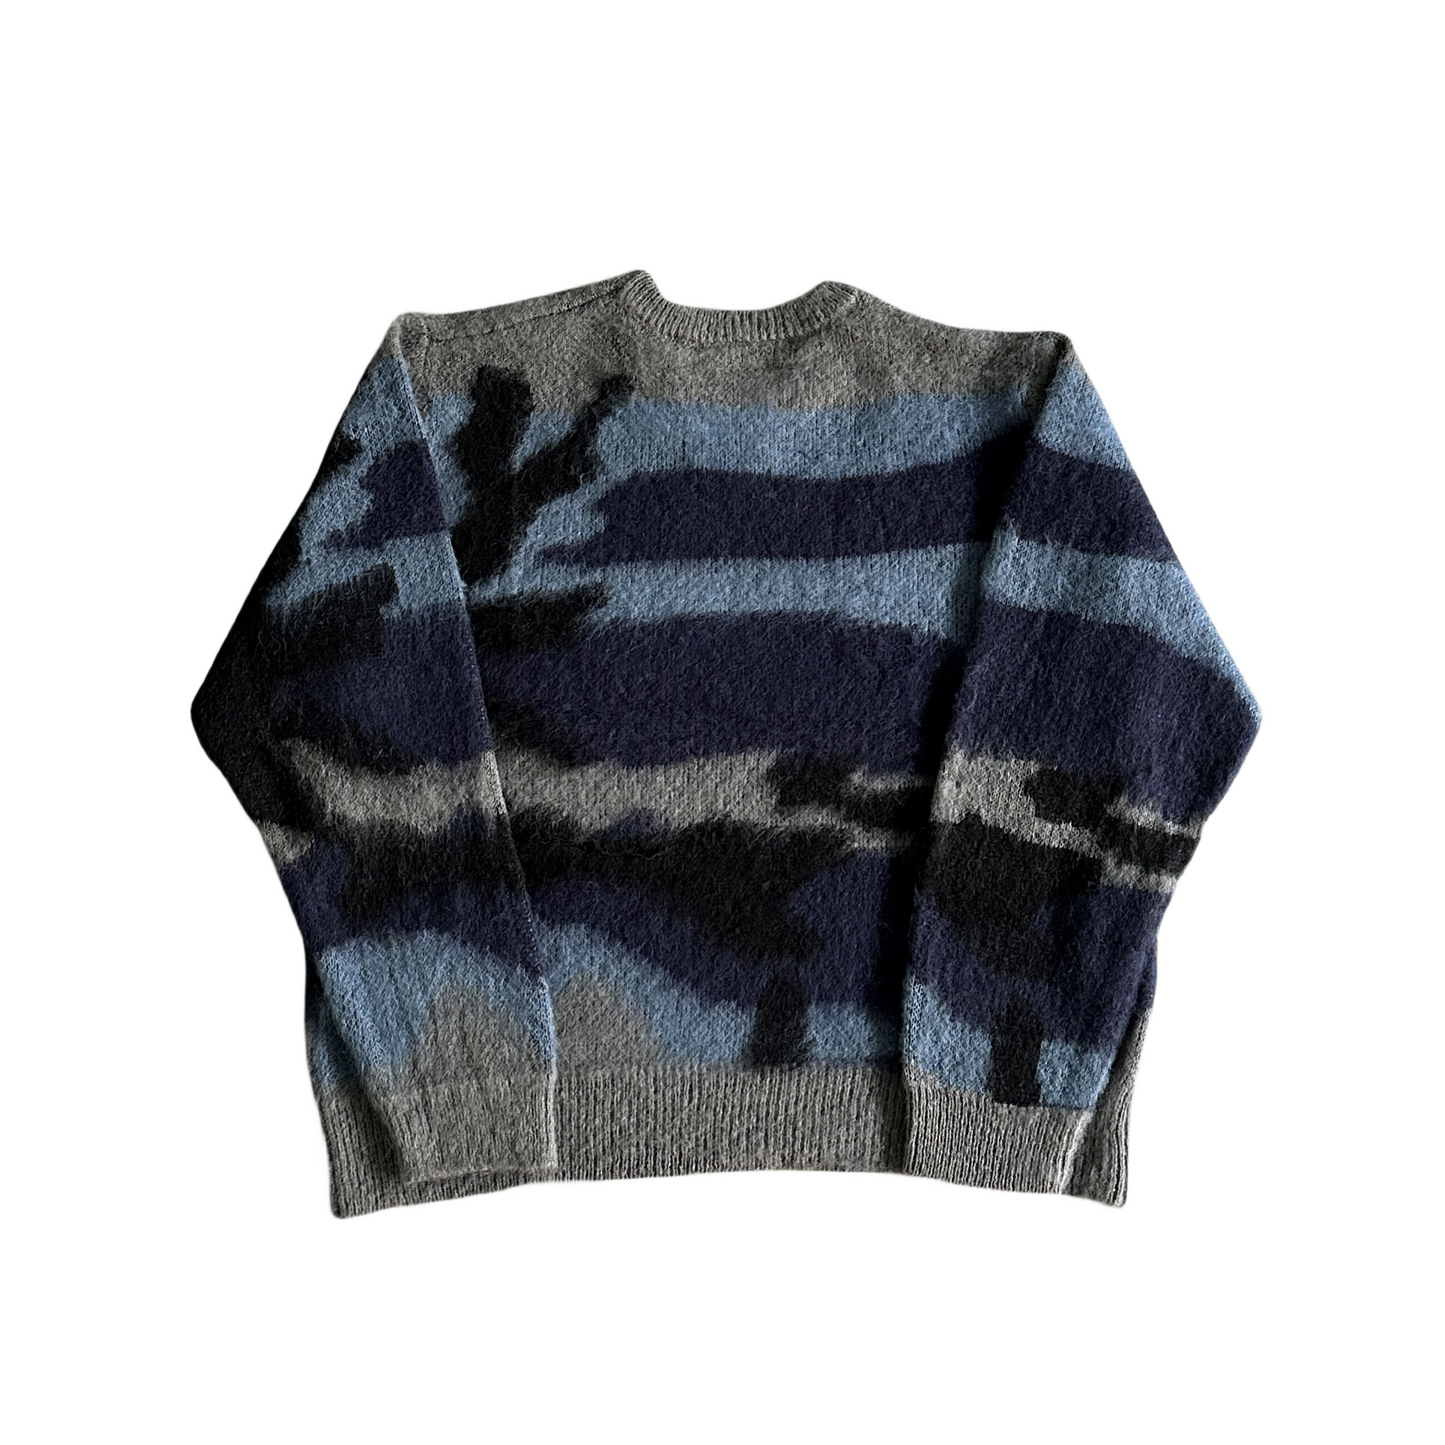 Corteiz Mohair Kmit Camo Knitted Jumper Sweater -Deep Ocean